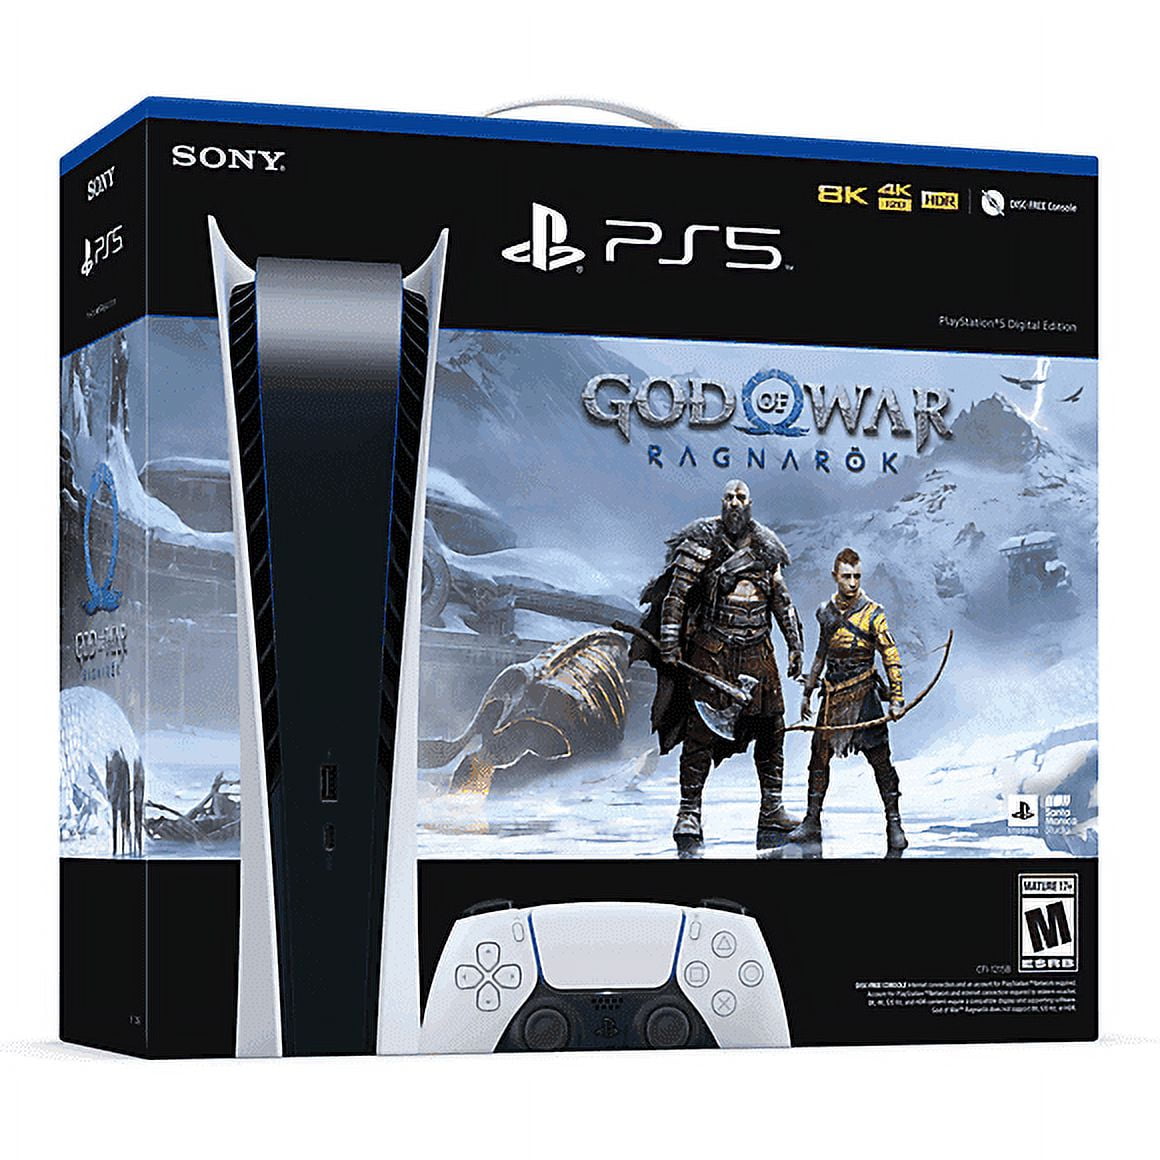 PS5 Digital Bundle with God of War